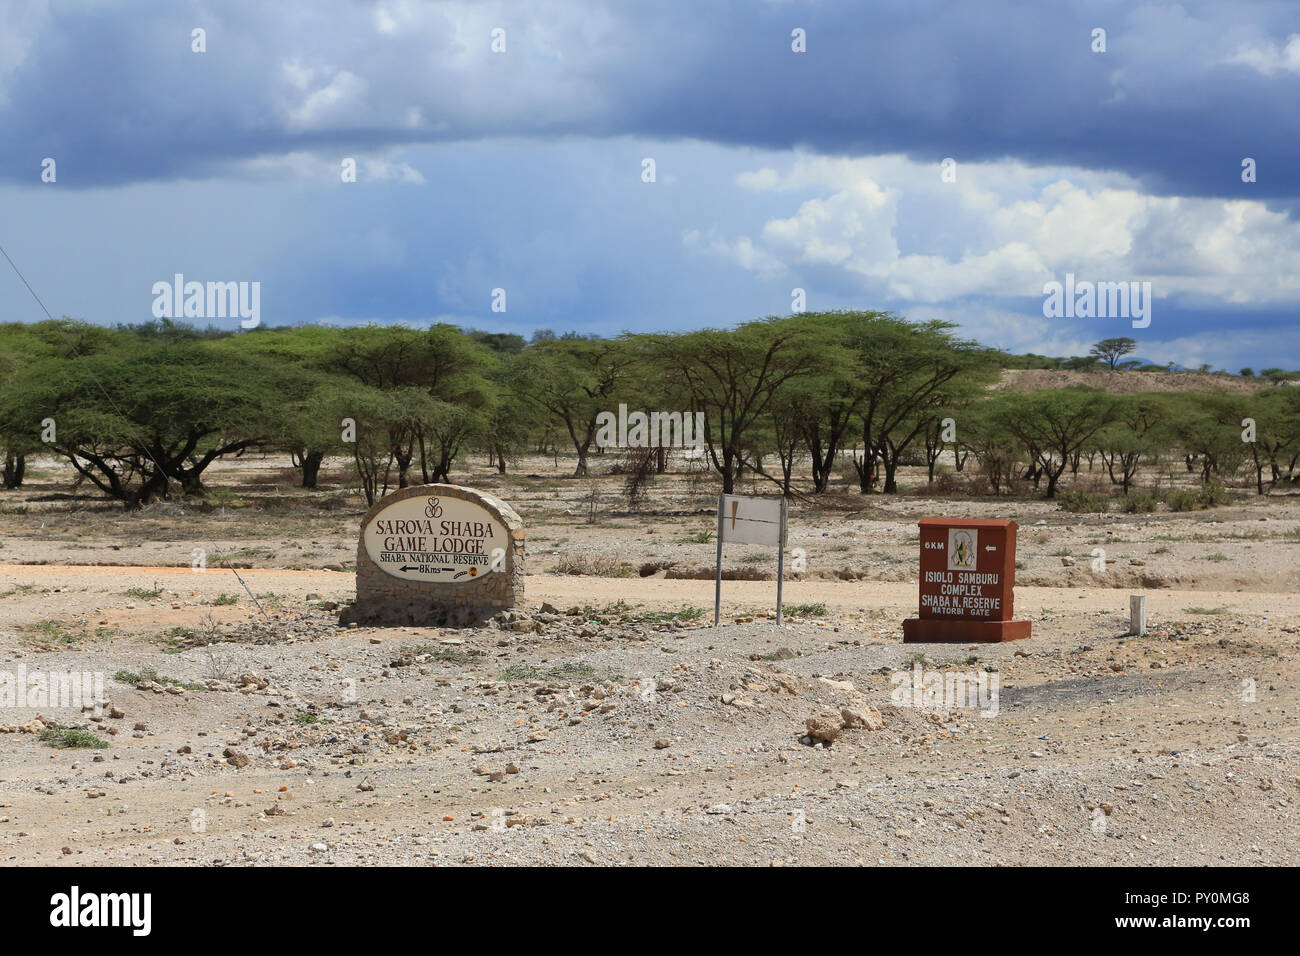 Deux signes de l'autoroute A2 au Kenya avec des directions pour le Sarova Shaba Lodge dans la réserve nationale de Shaba au Kenya. Banque D'Images